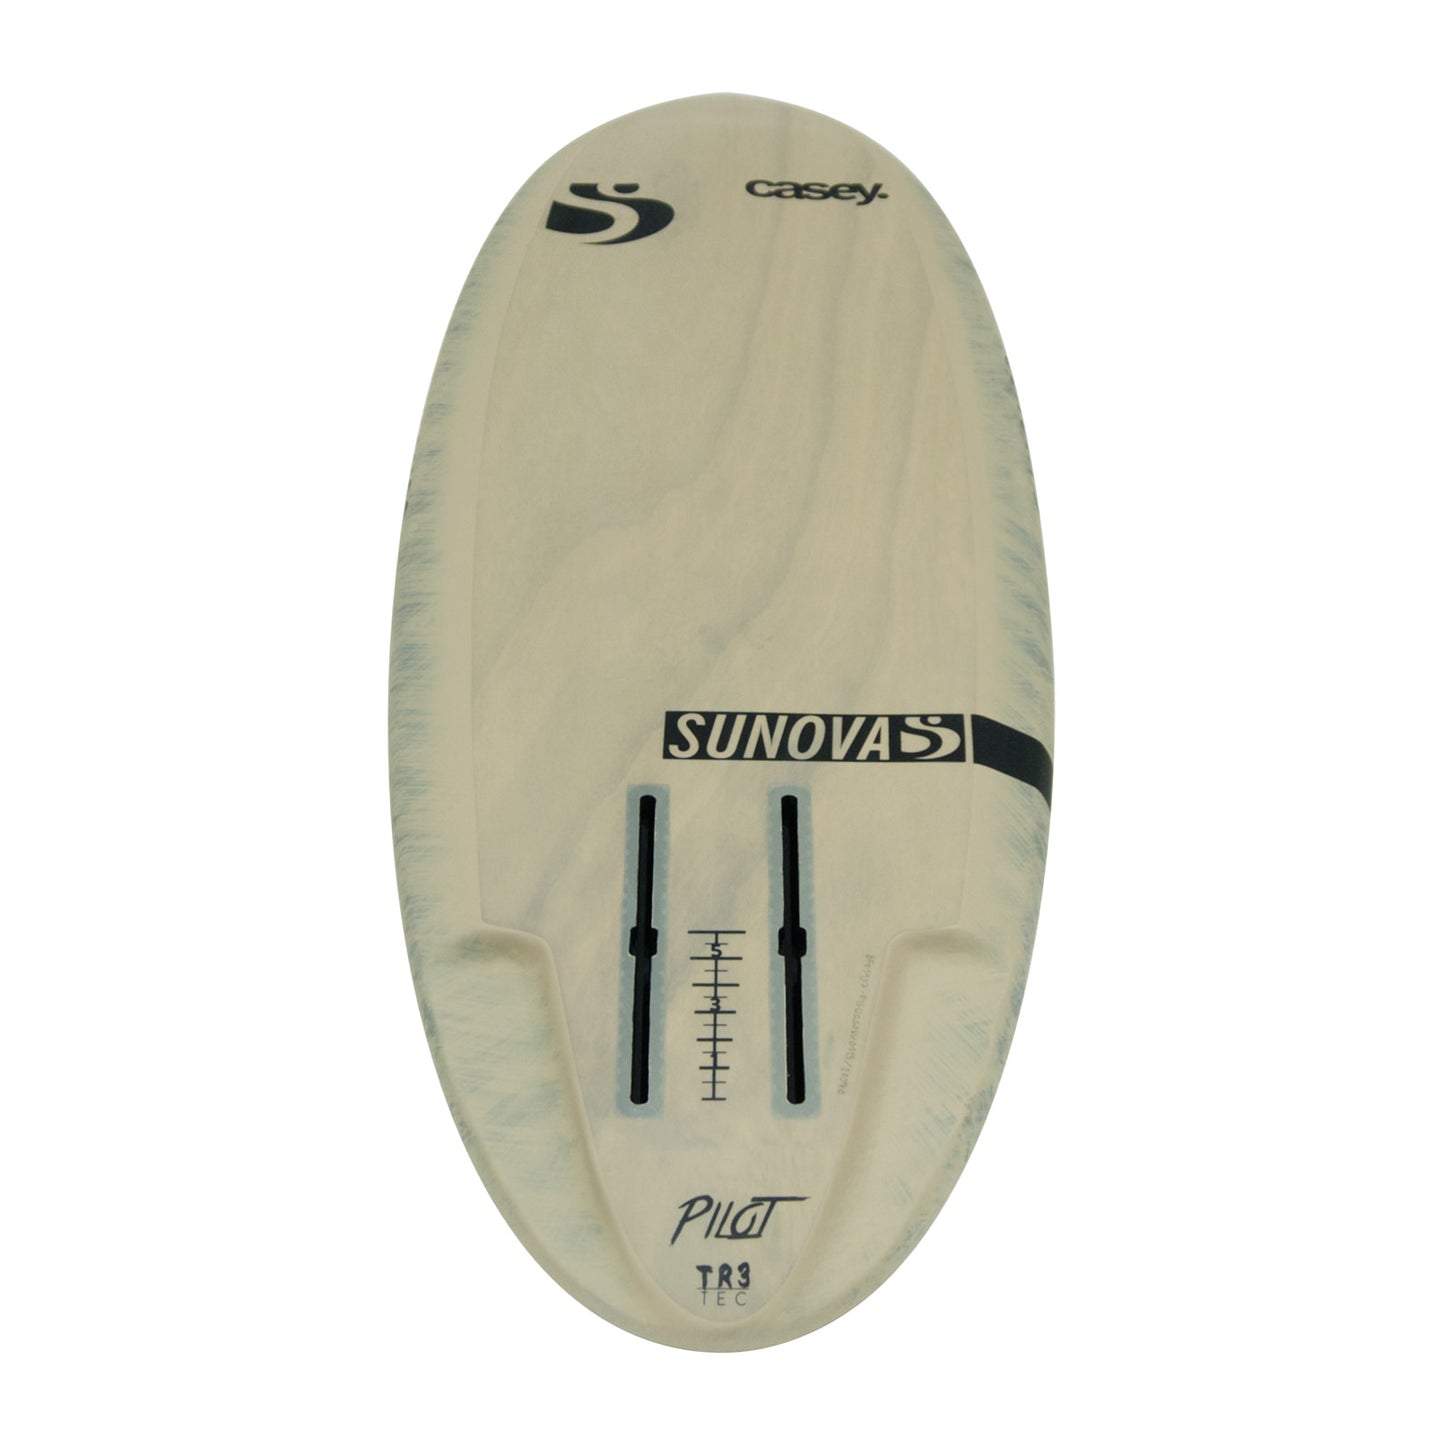 Heck Ansicht der Unterseite des Sunova Casey Pilot Surf Pronefoil Board in der TR3 Bauweise.